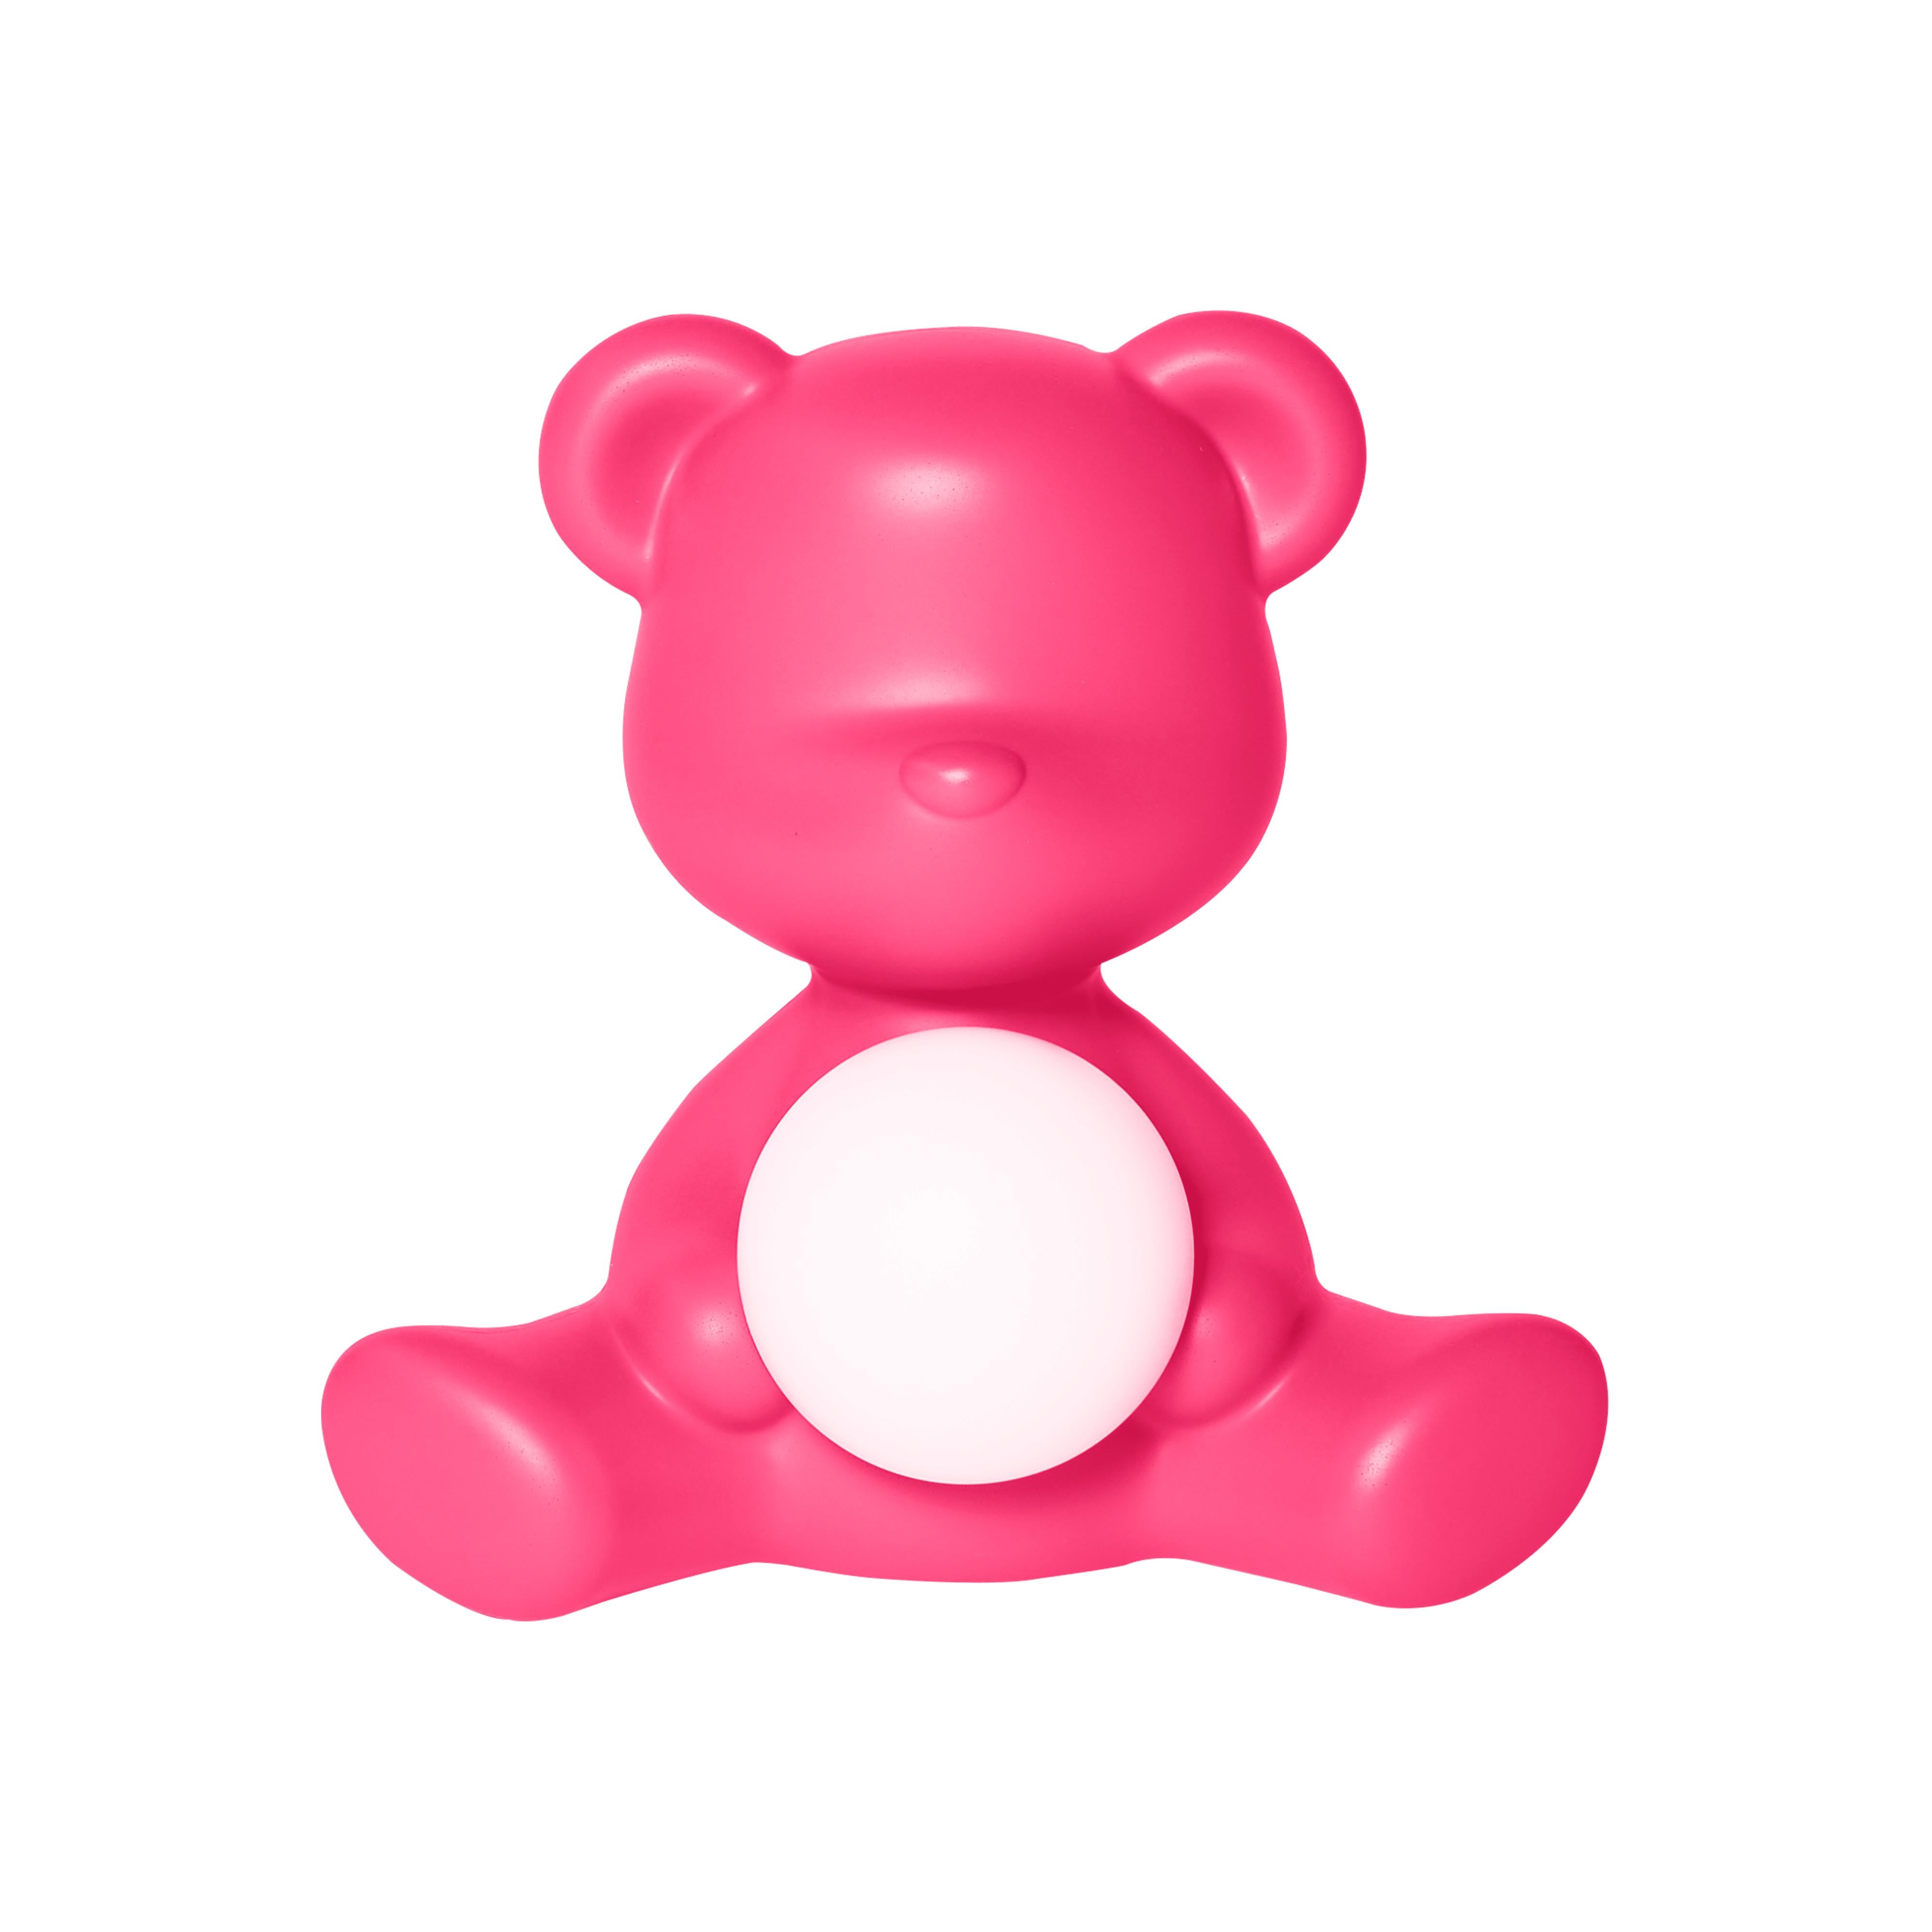 En vente : Pink (Fuxia) Lampe de bureau moderne en forme d'ours Teddy, violet, vert, orange, rose, blanc, bleu, noir ou jaune